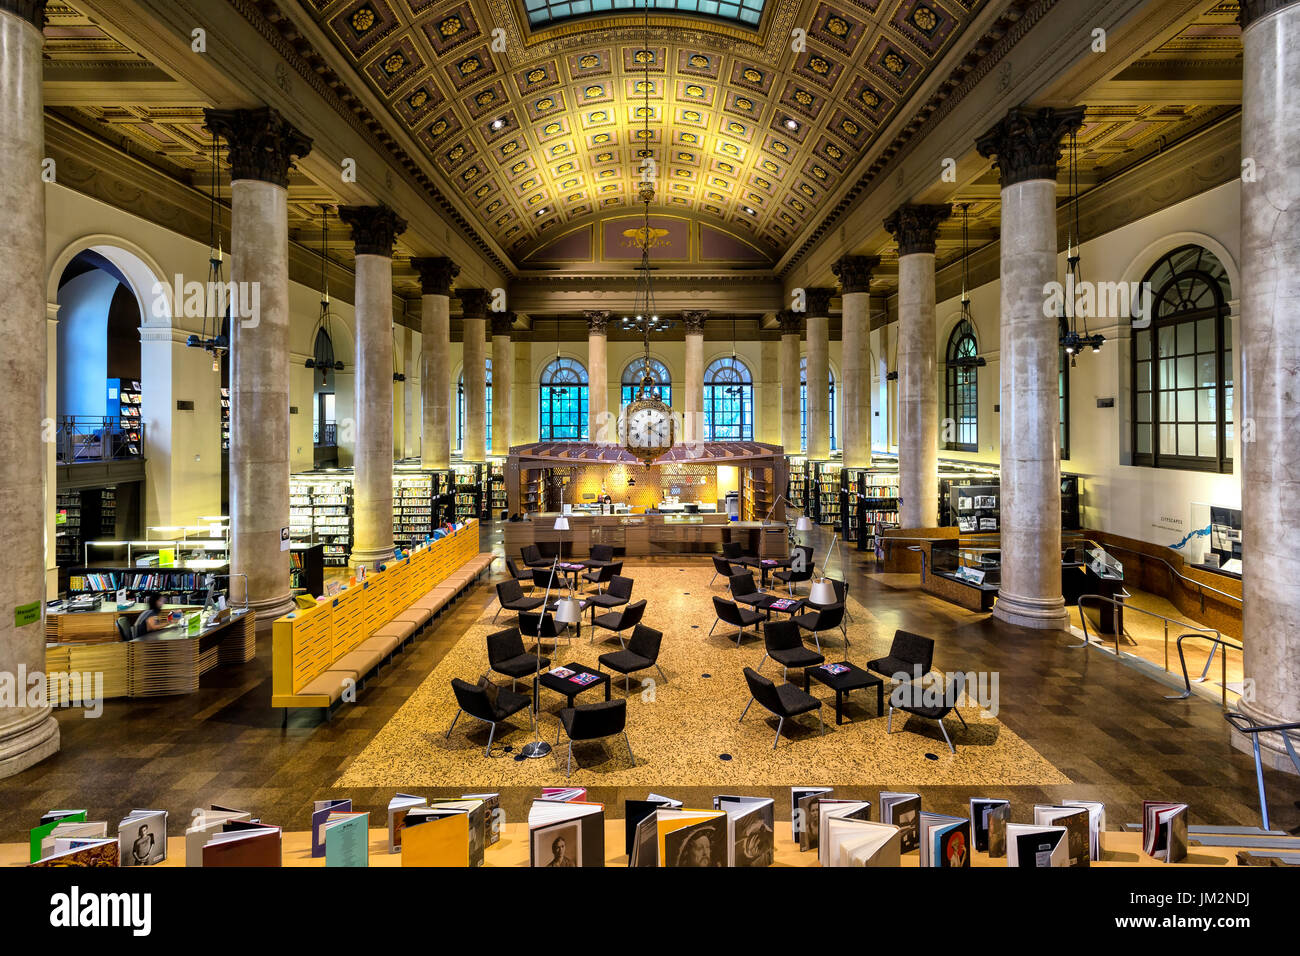 Providence, Rhode Island - Juni 2017. Blick auf die schöne Innenausstattung der Rhode Island School of Design (RISD) Bibliothek. Stockfoto